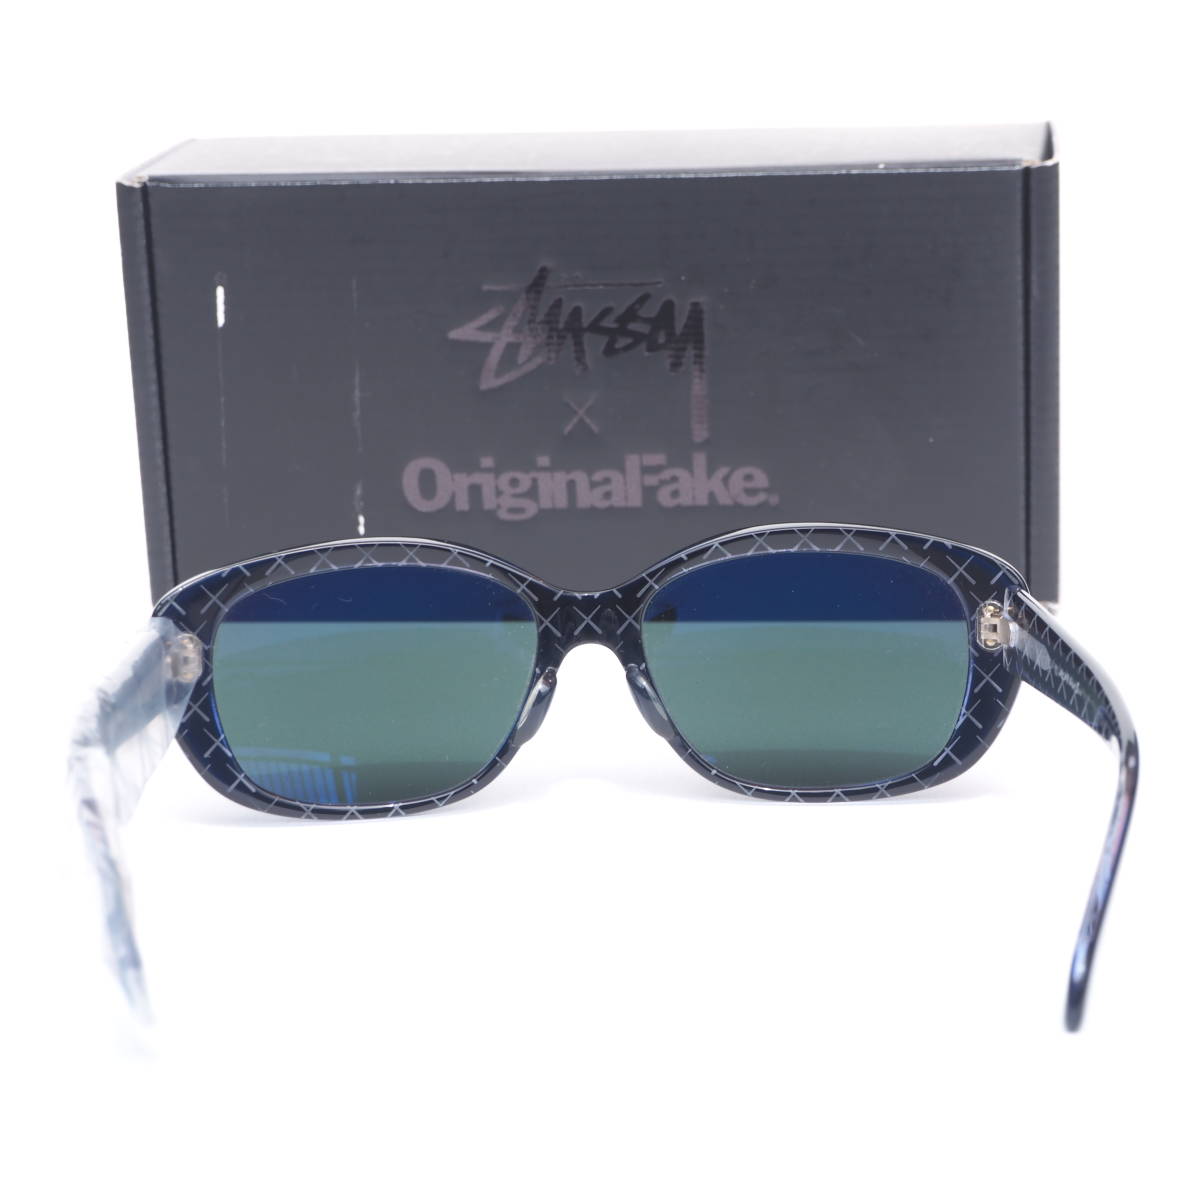  DEAD   редкий !!  новый товар  STUSSY NAOMI OriginalFake KAWS  солнцезащитные очки  ...  оригинал  фальшивый   ...  солнцезащитные очки   синий  